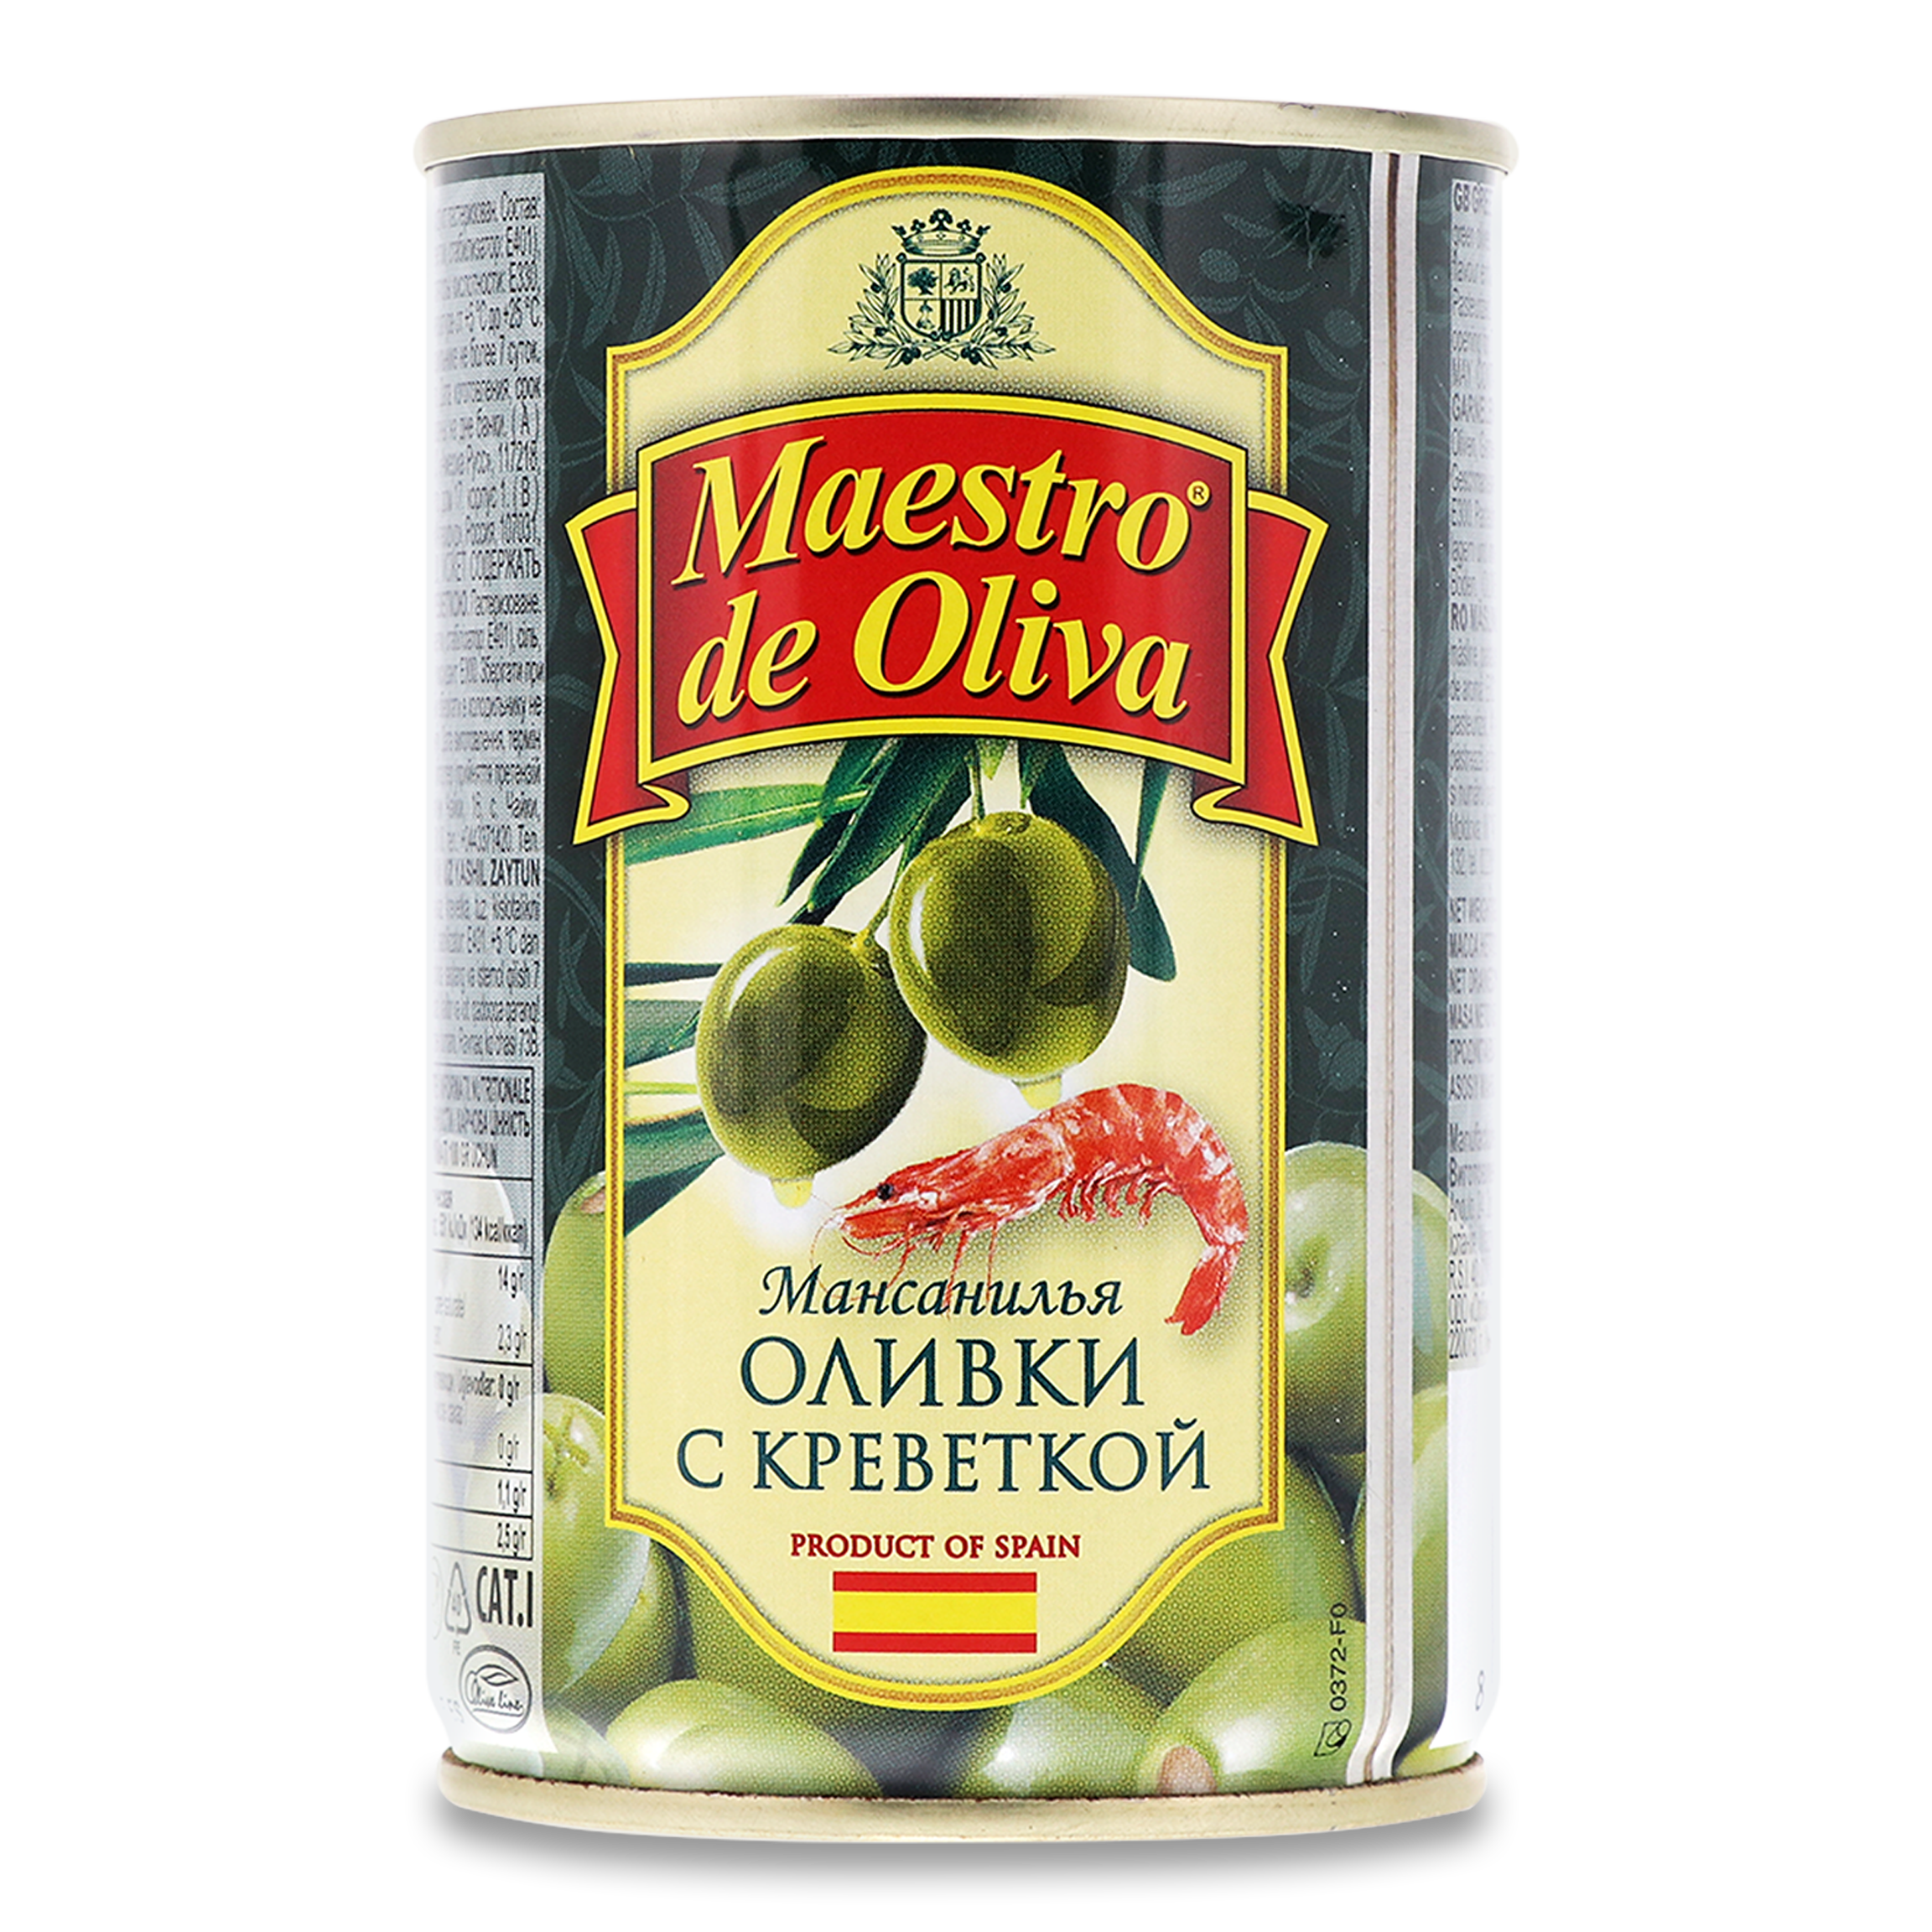 Оливки Maestro de Oliva зеленые с креветкой 300мл